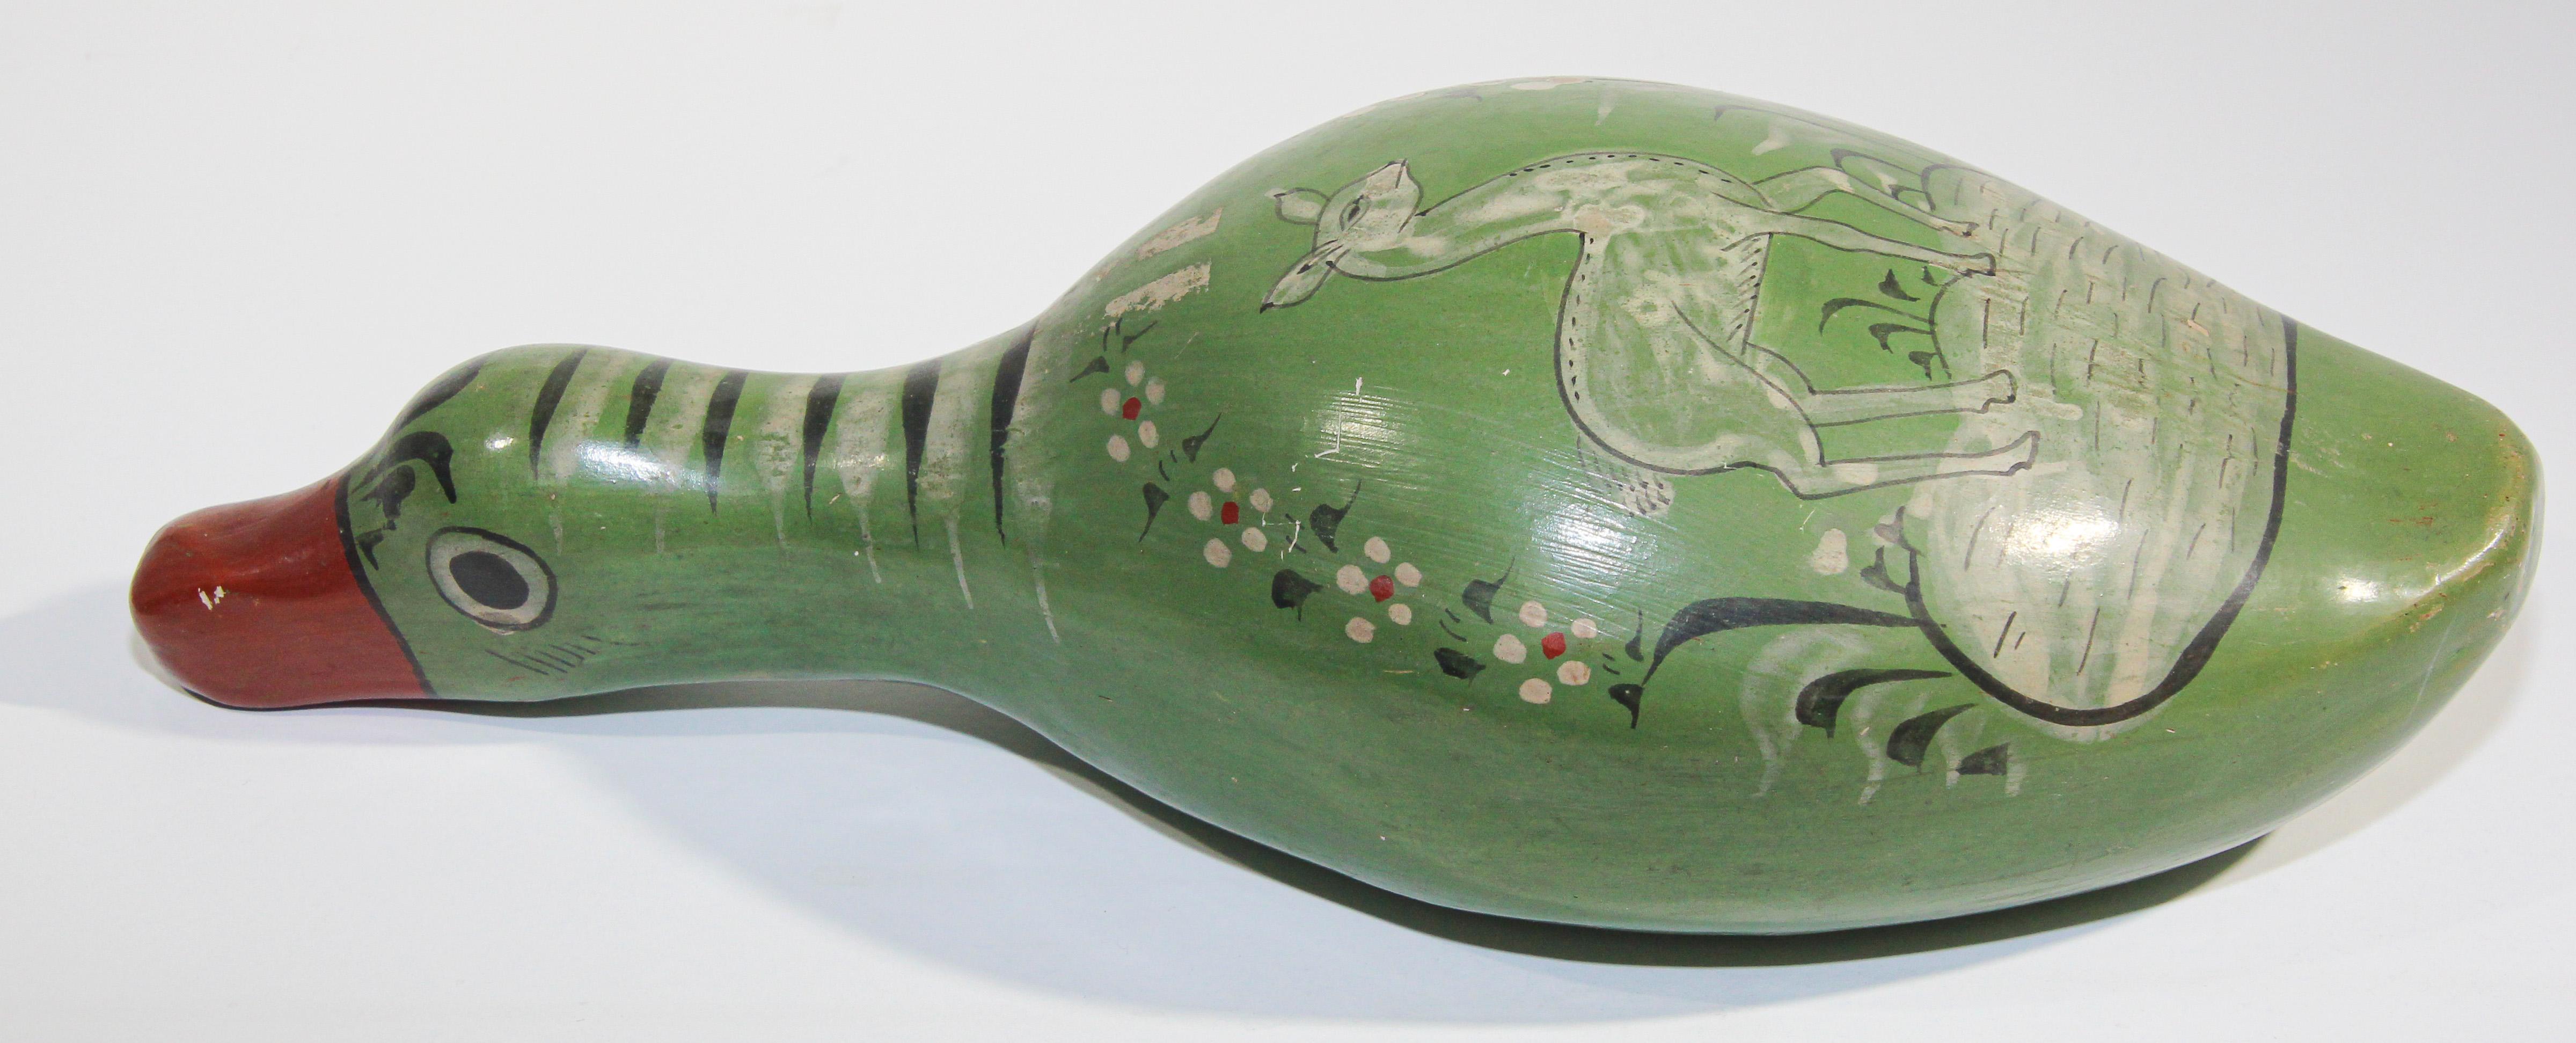 Canard en céramique mexicaine vintage de la marque Tonala Pottery.
Magnifique poterie d'art mexicaine TONALA vintage, fabriquée et peinte à la main.
Vieille collection de poterie mexicaine Tonala peinte à la main, oiseau Folk Art.
El Palomar